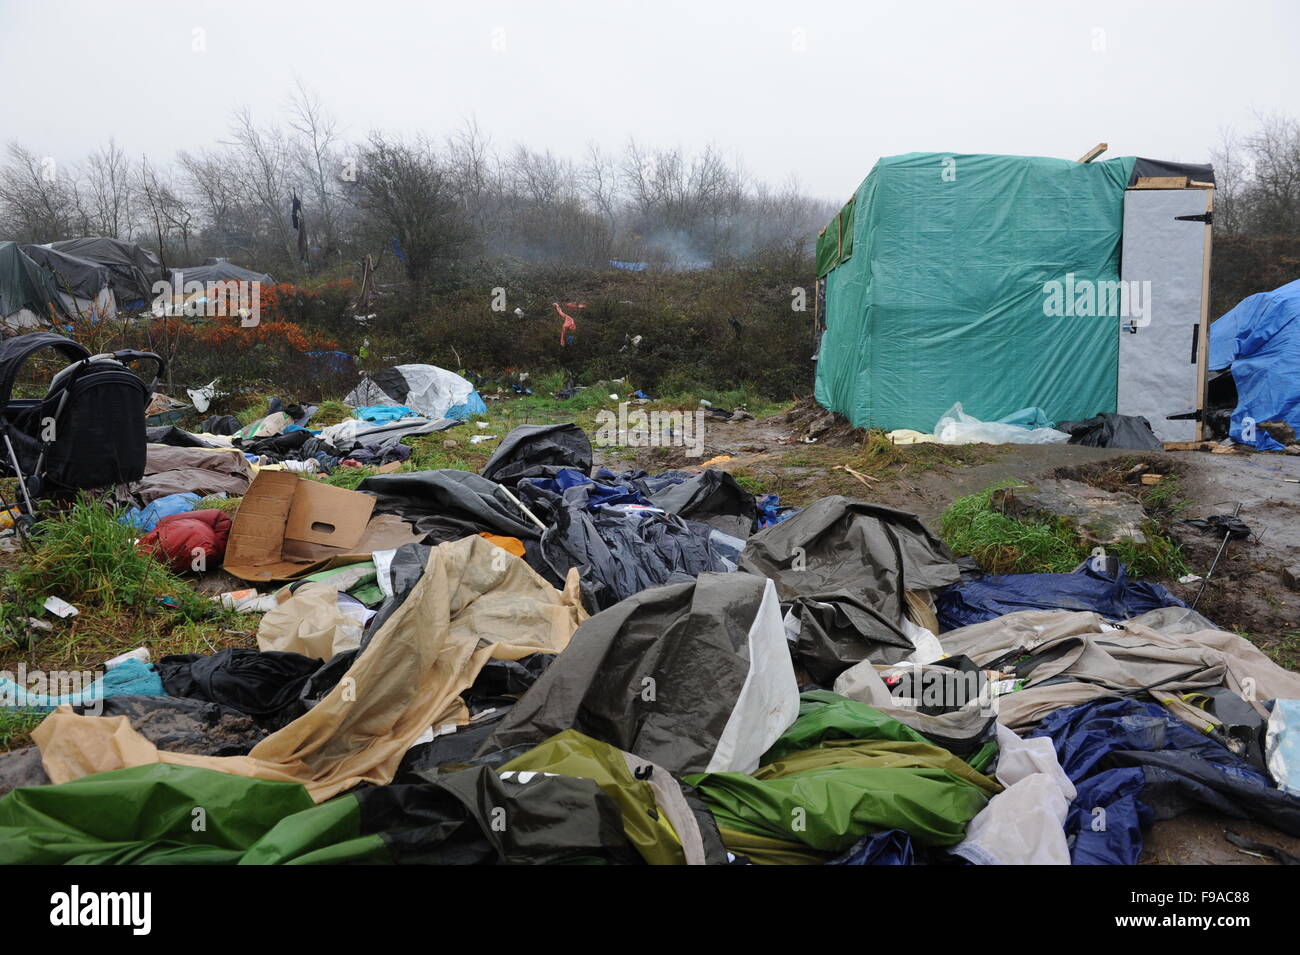 CALAIS, FRANCE. Le 13 décembre 2015. Des tentes de fortune et les structures dans la 'jungle' camp de réfugiés à Calais par une matinée pluvieuse. Banque D'Images